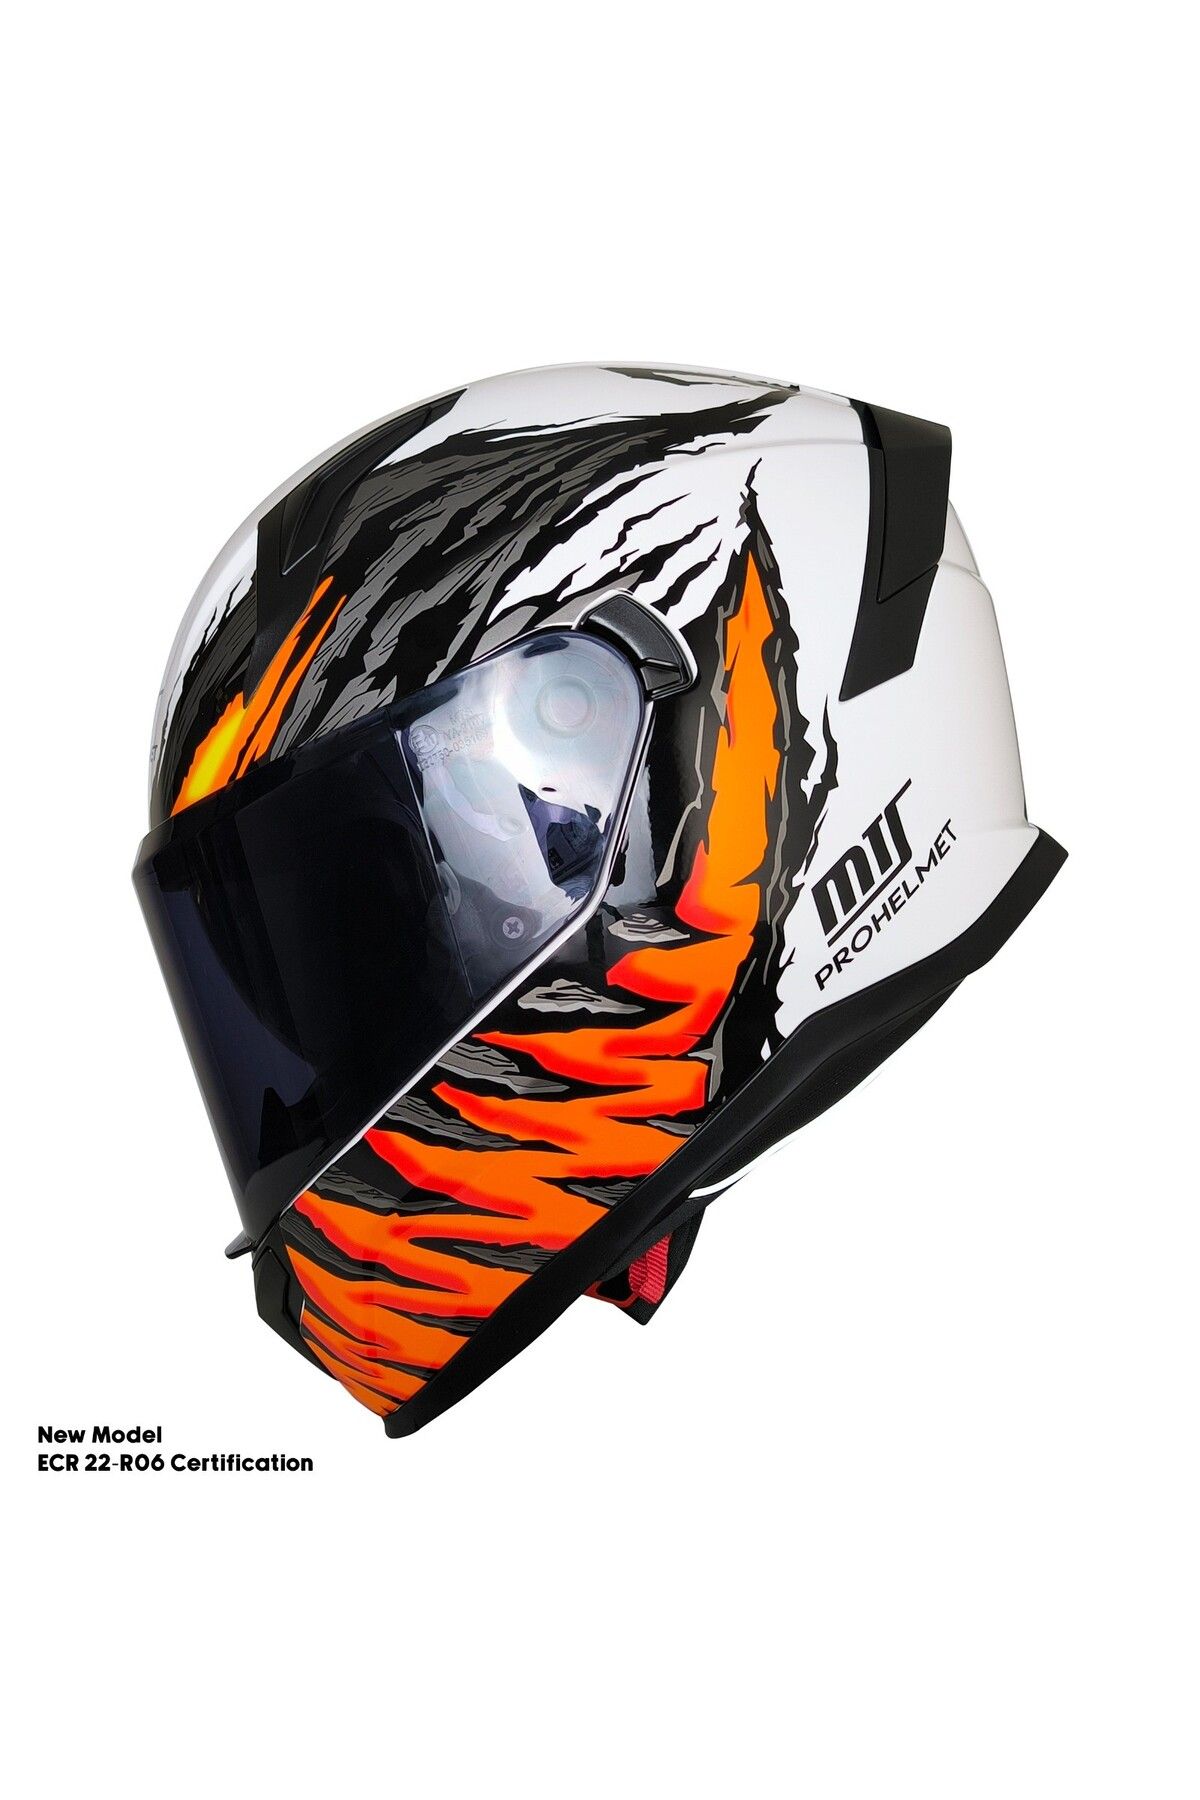 ebakbak Motosiklet Kask Ece 22.R06 Sertifikalı Güneş Vizörlü Fiber Kask Full Face Motor Kaskı Yeni Sezon